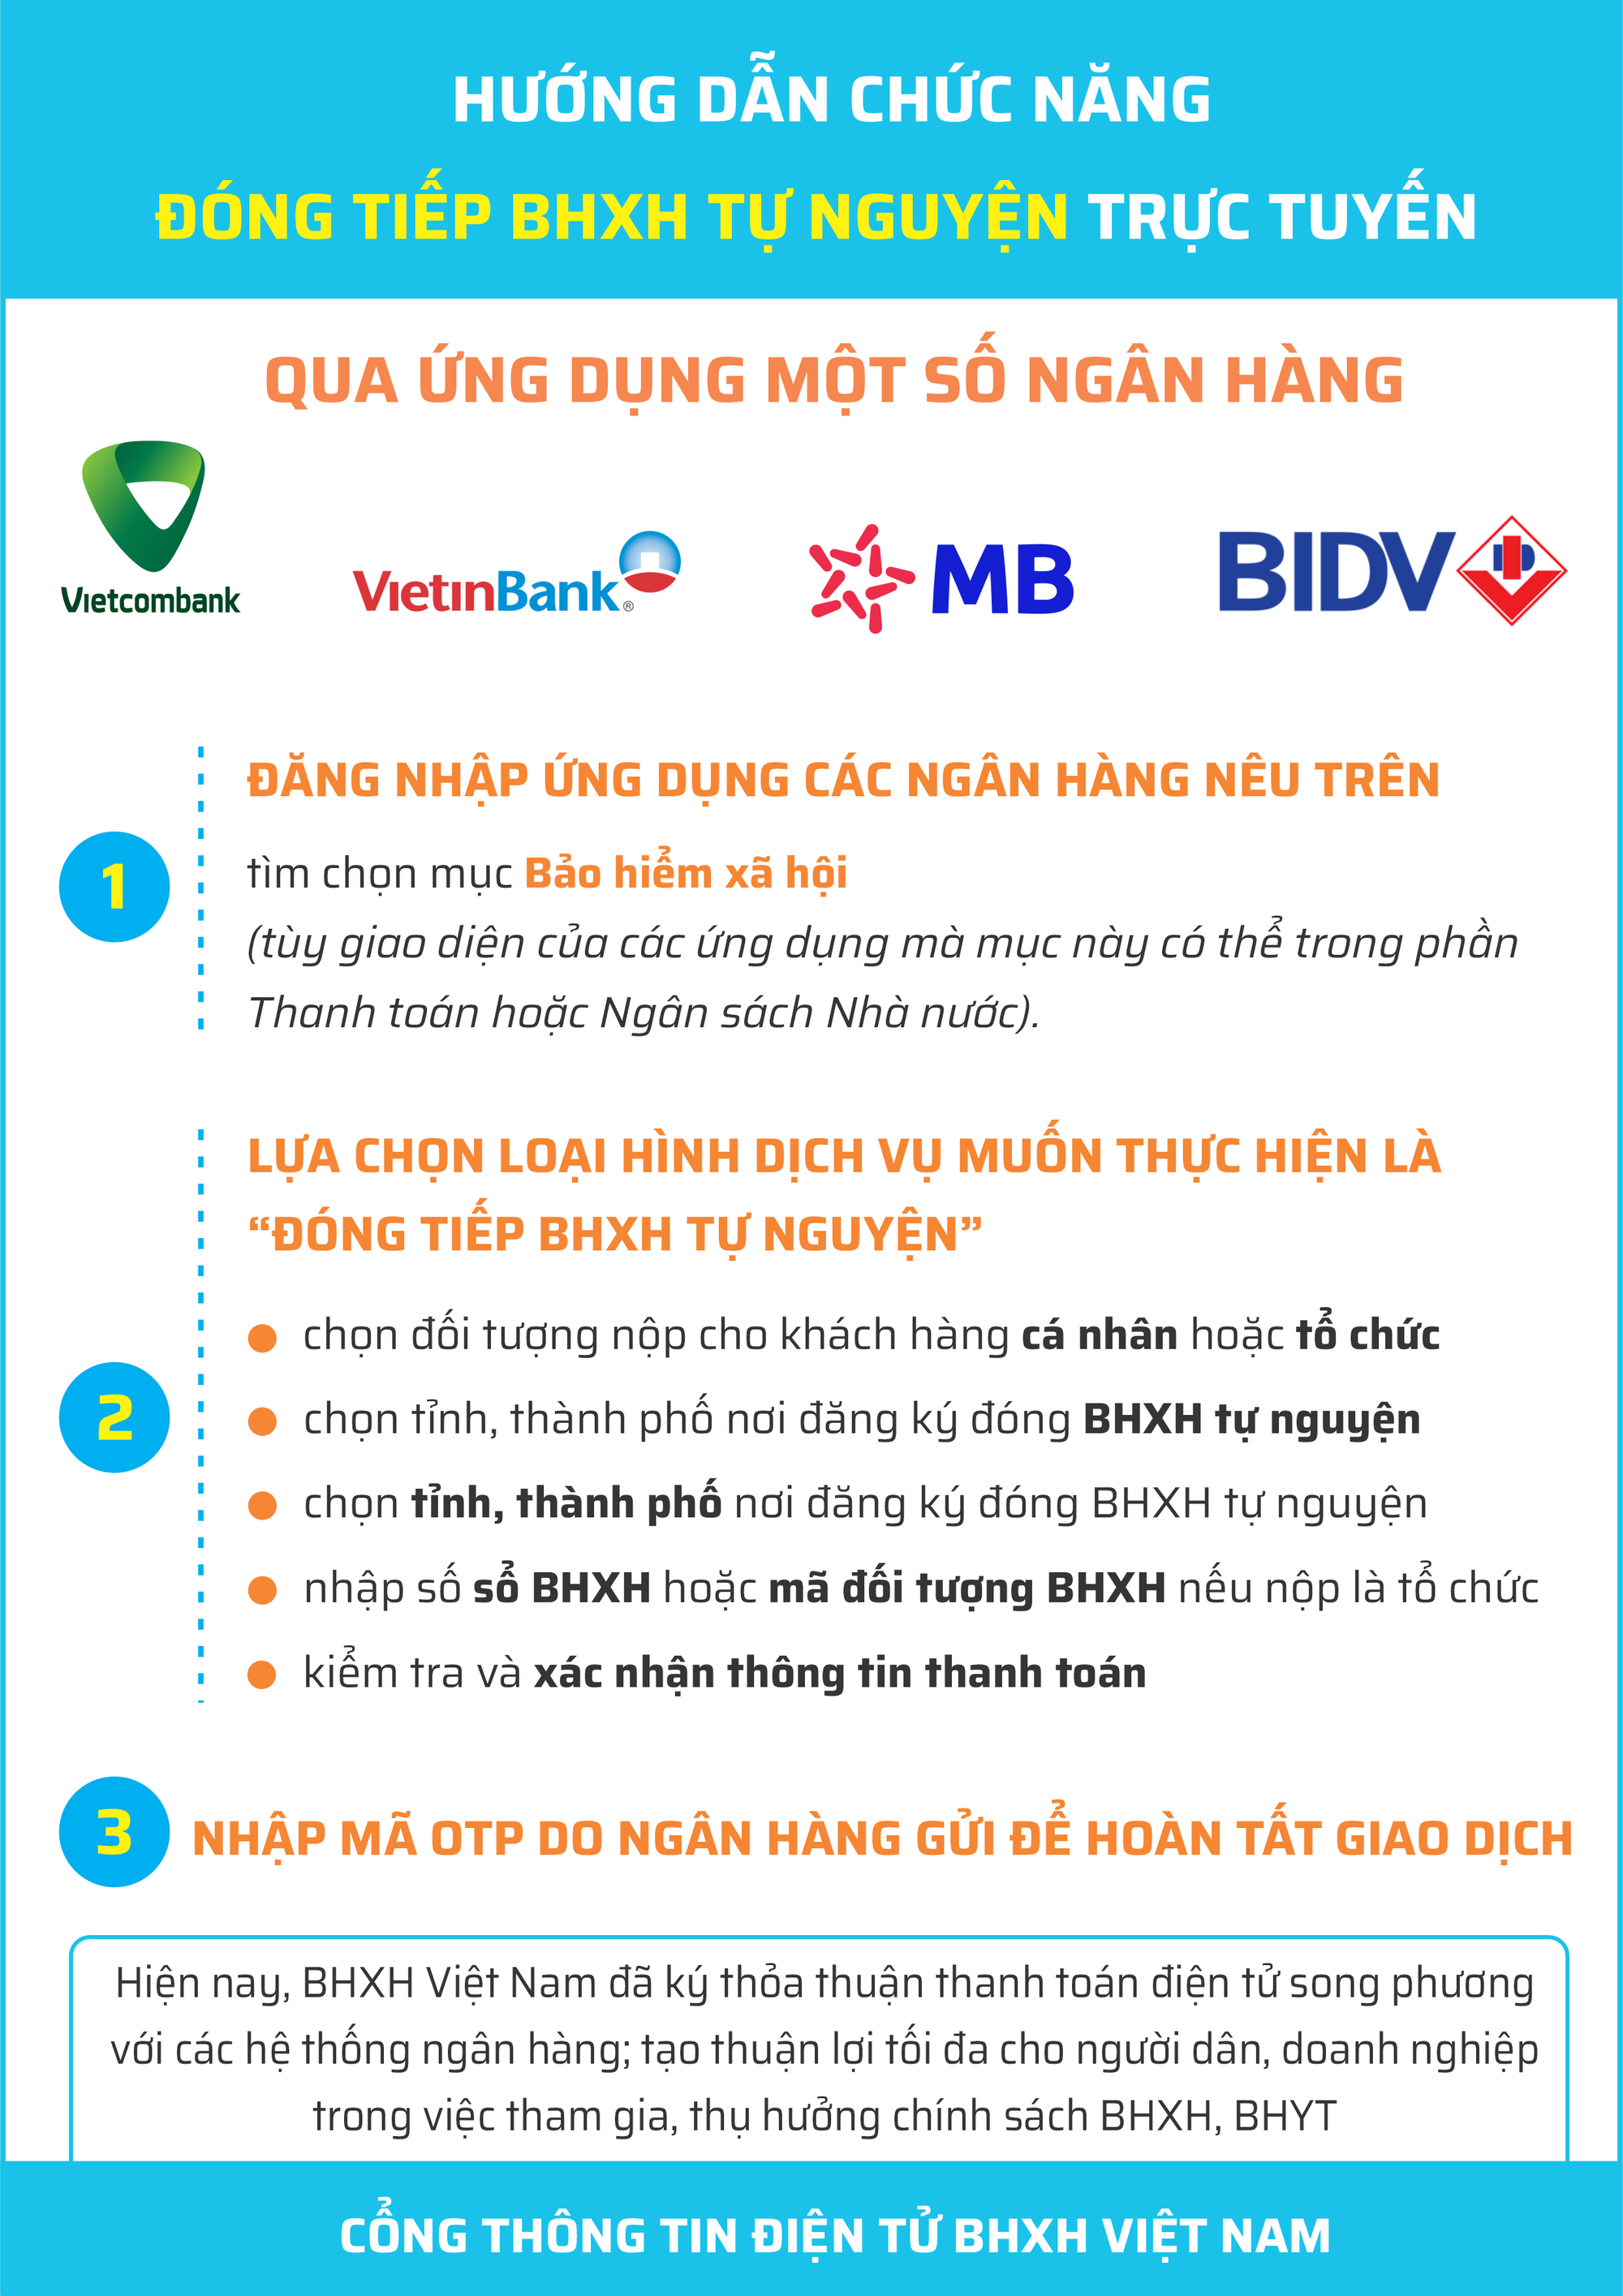 Hướng dẫn đóng tiếp BHXH tự nguyện qua ứng dụng một số ngân hàng - Ảnh 3.